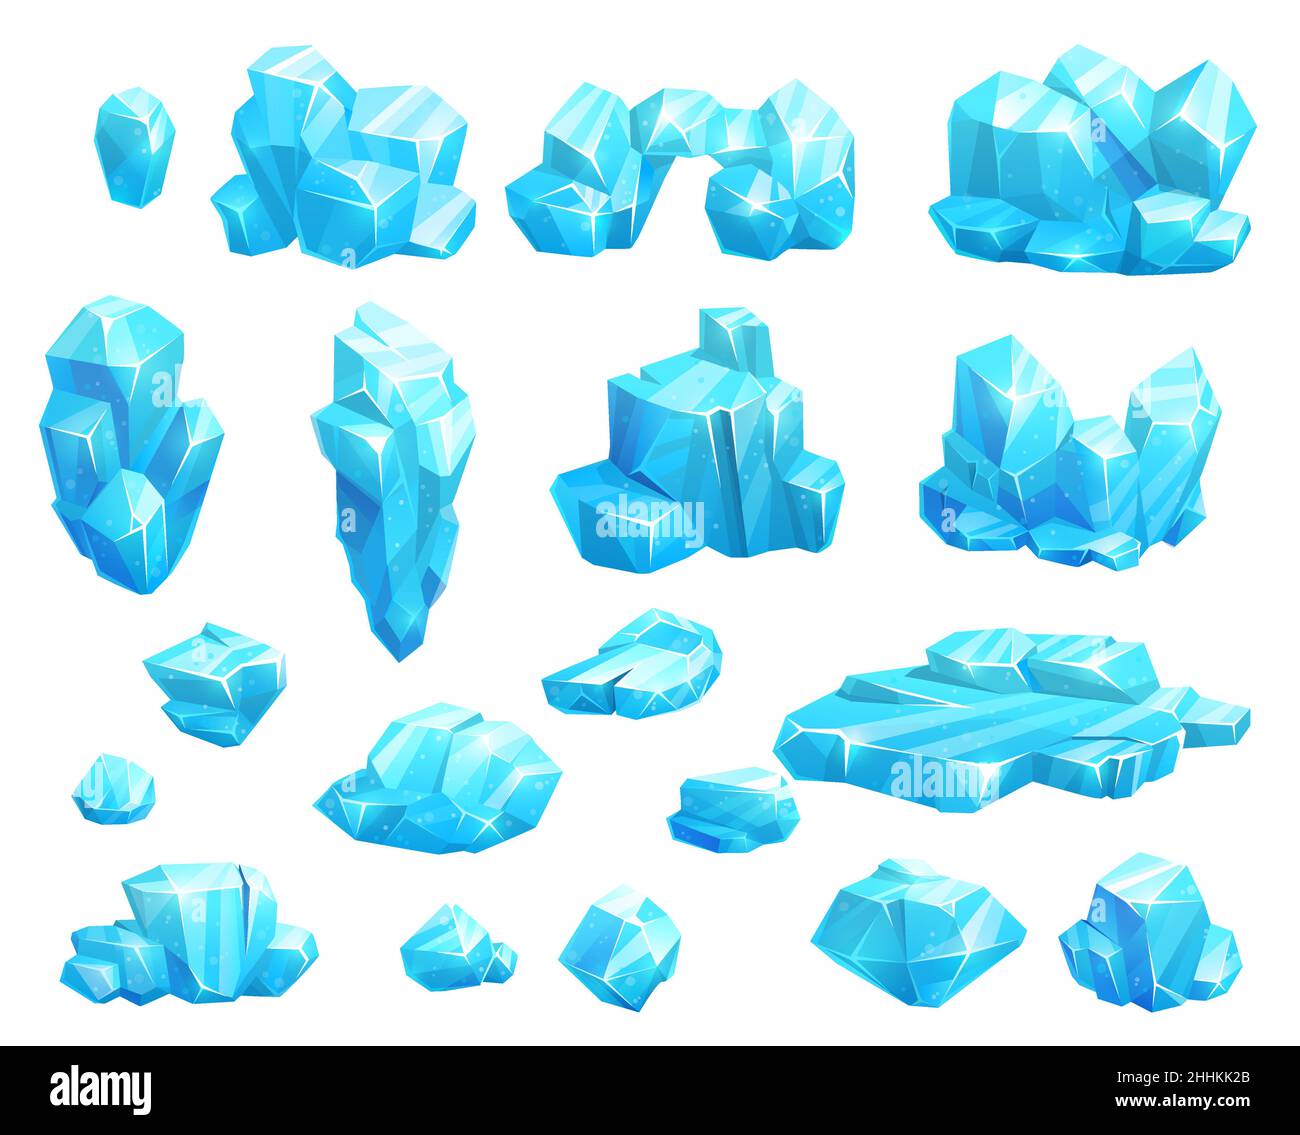 Cartoon ghiacciato cristalli e ghiaccioli, blocchi e iceberg, pietre magiche gioco asset. Galleggianti ghiacciati blu vettoriali, sali minerali o stalagmiti rupestri. Tappi Illustrazione Vettoriale